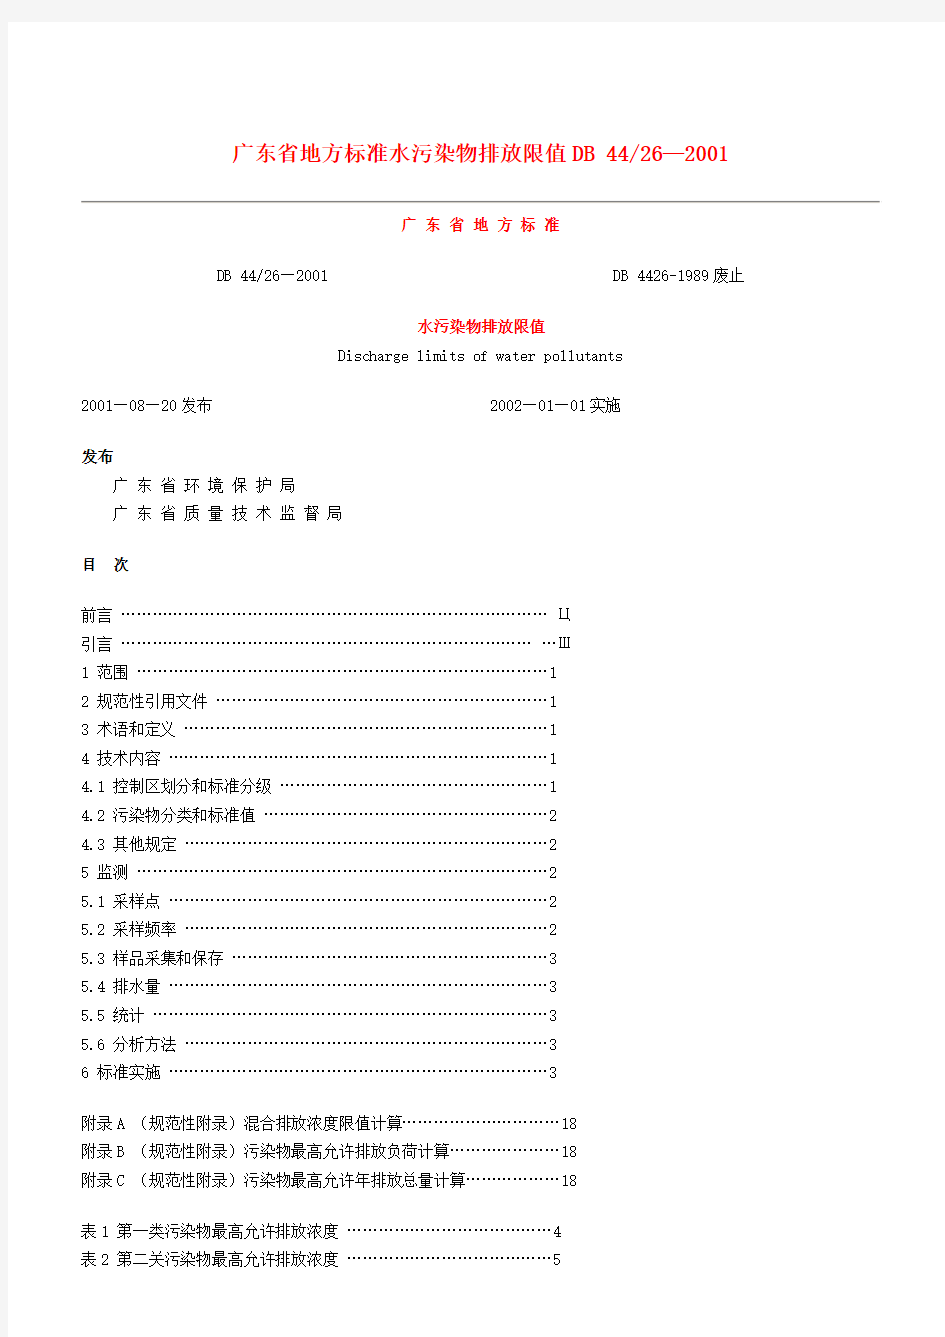 广东省地方标准水污染物排放限值DB4426-2001..